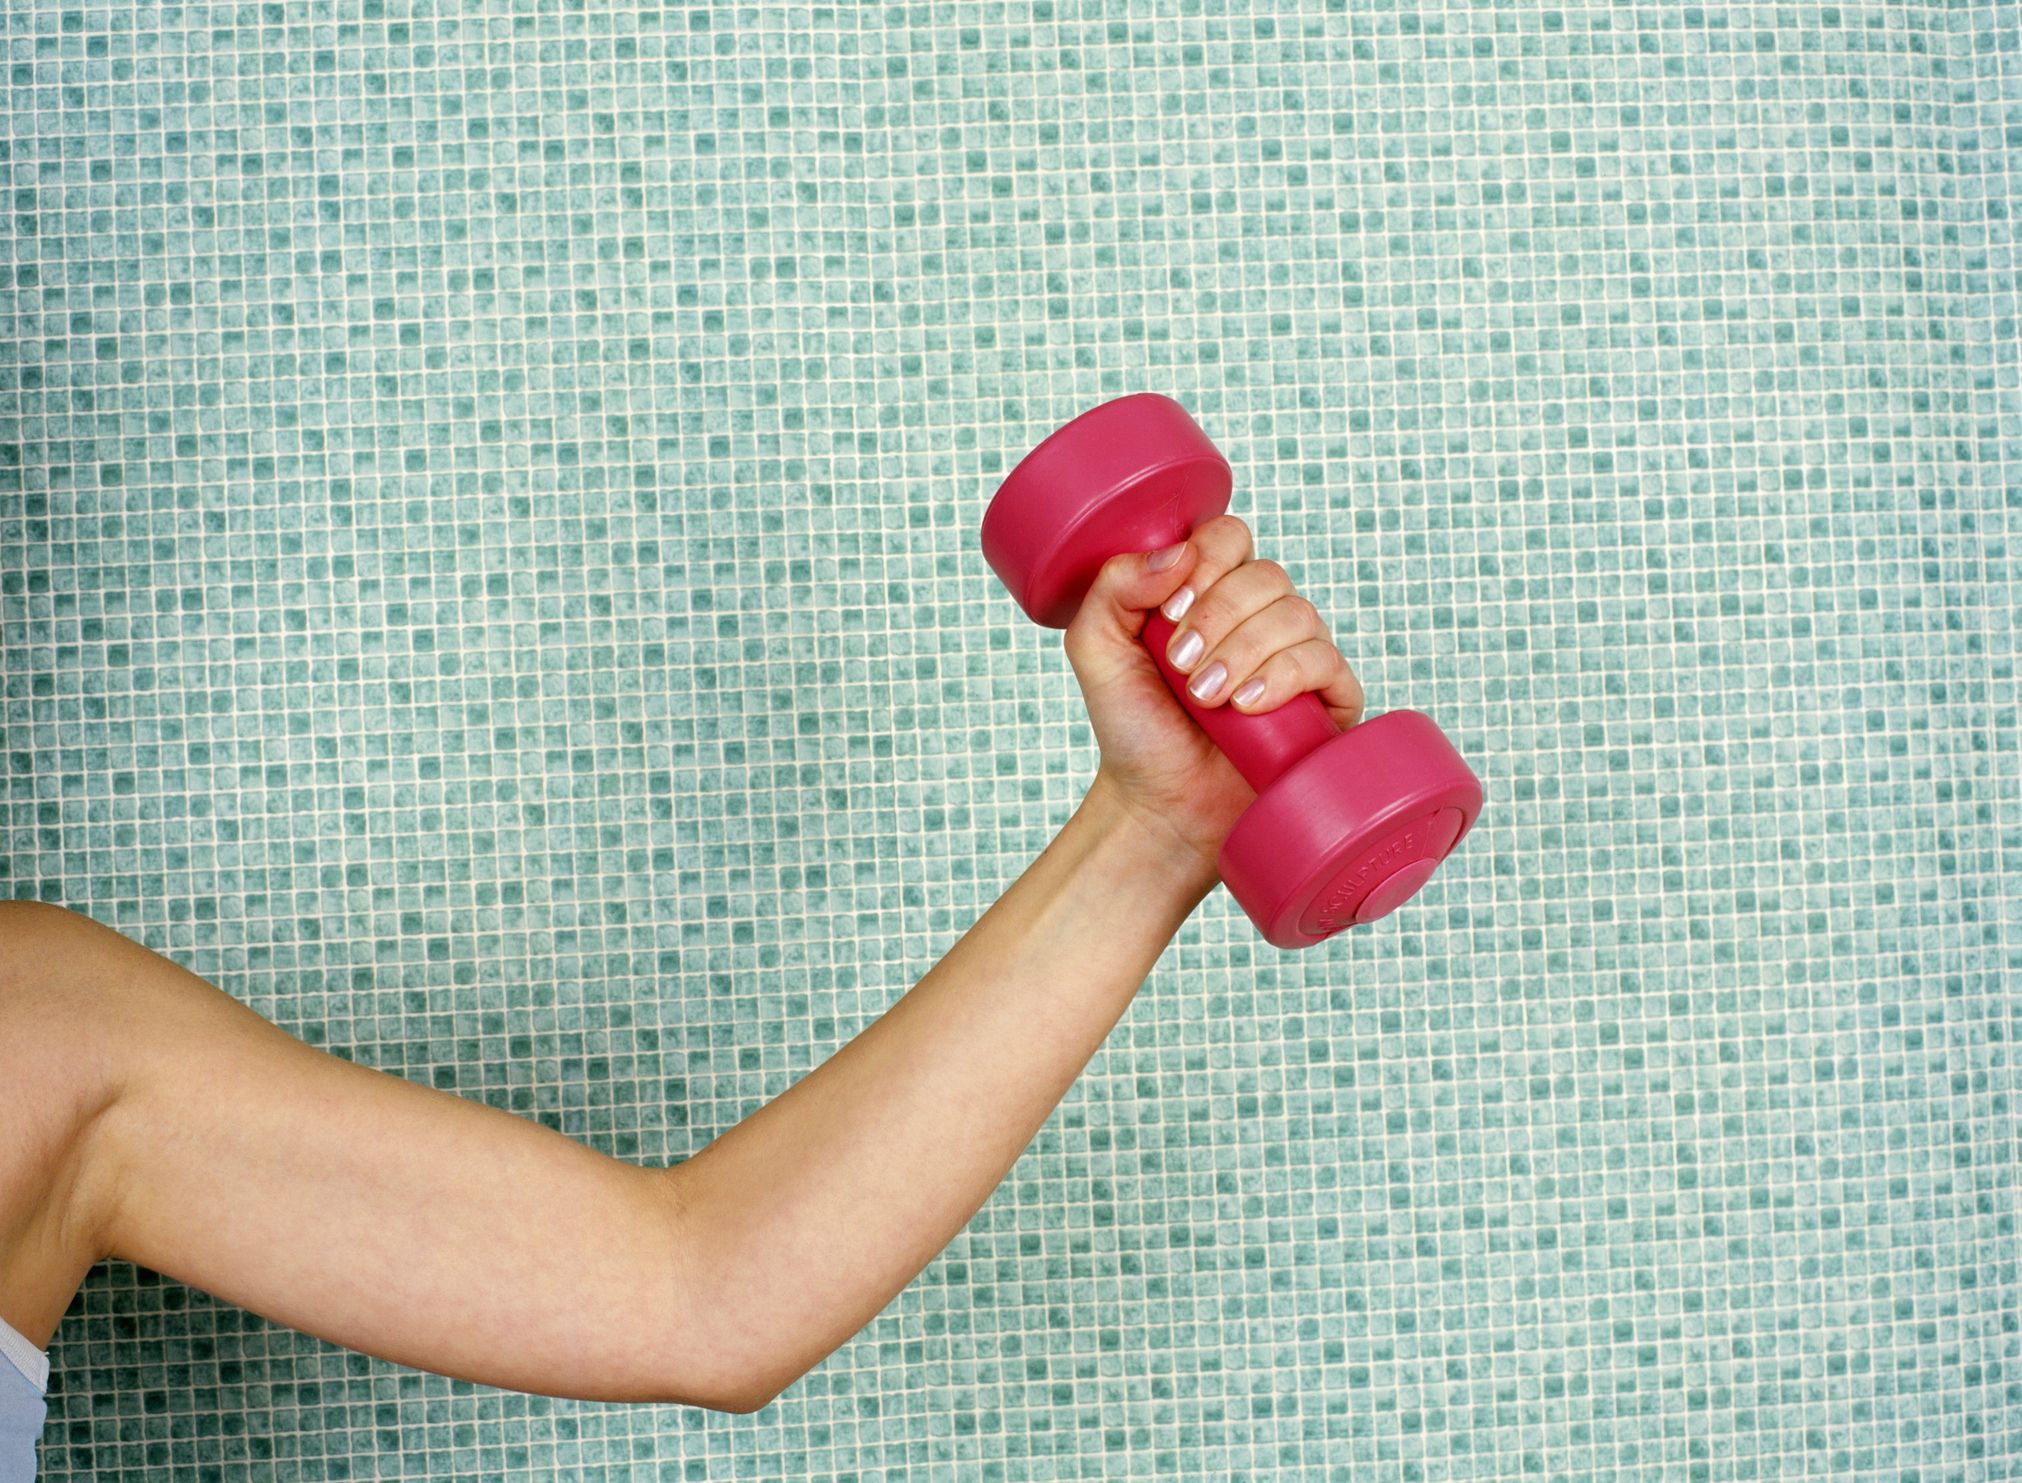 Exercices pour combattre la cellulite des bras